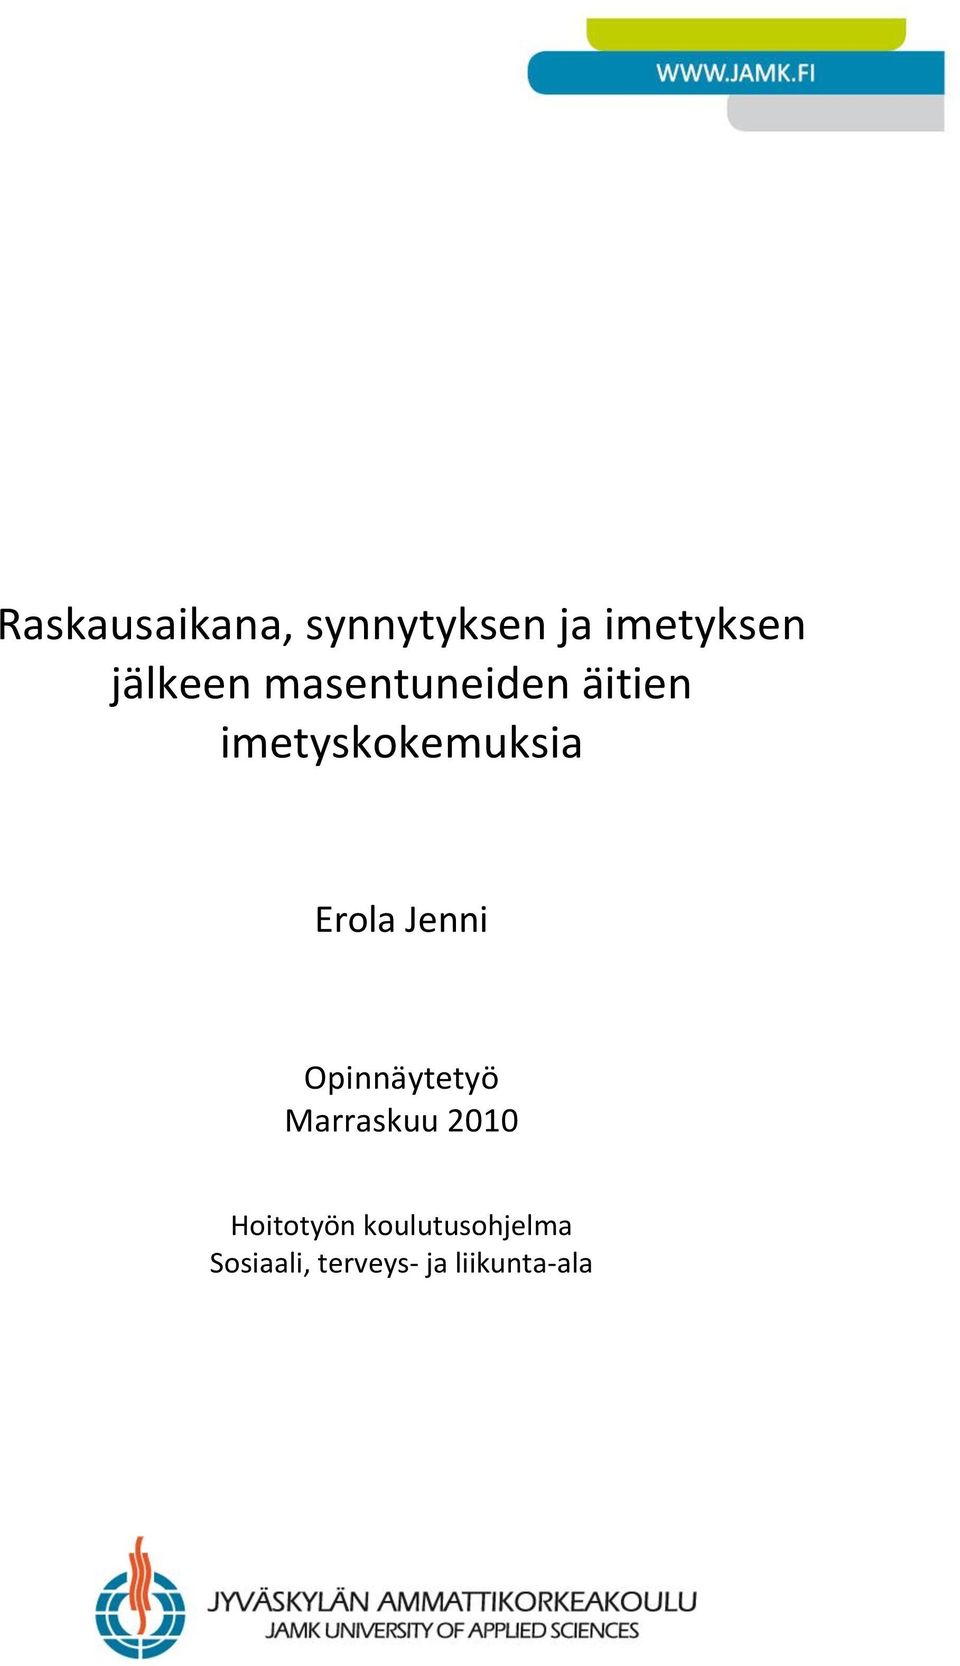 Erola Jenni Opinnäytetyö Marraskuu 2010